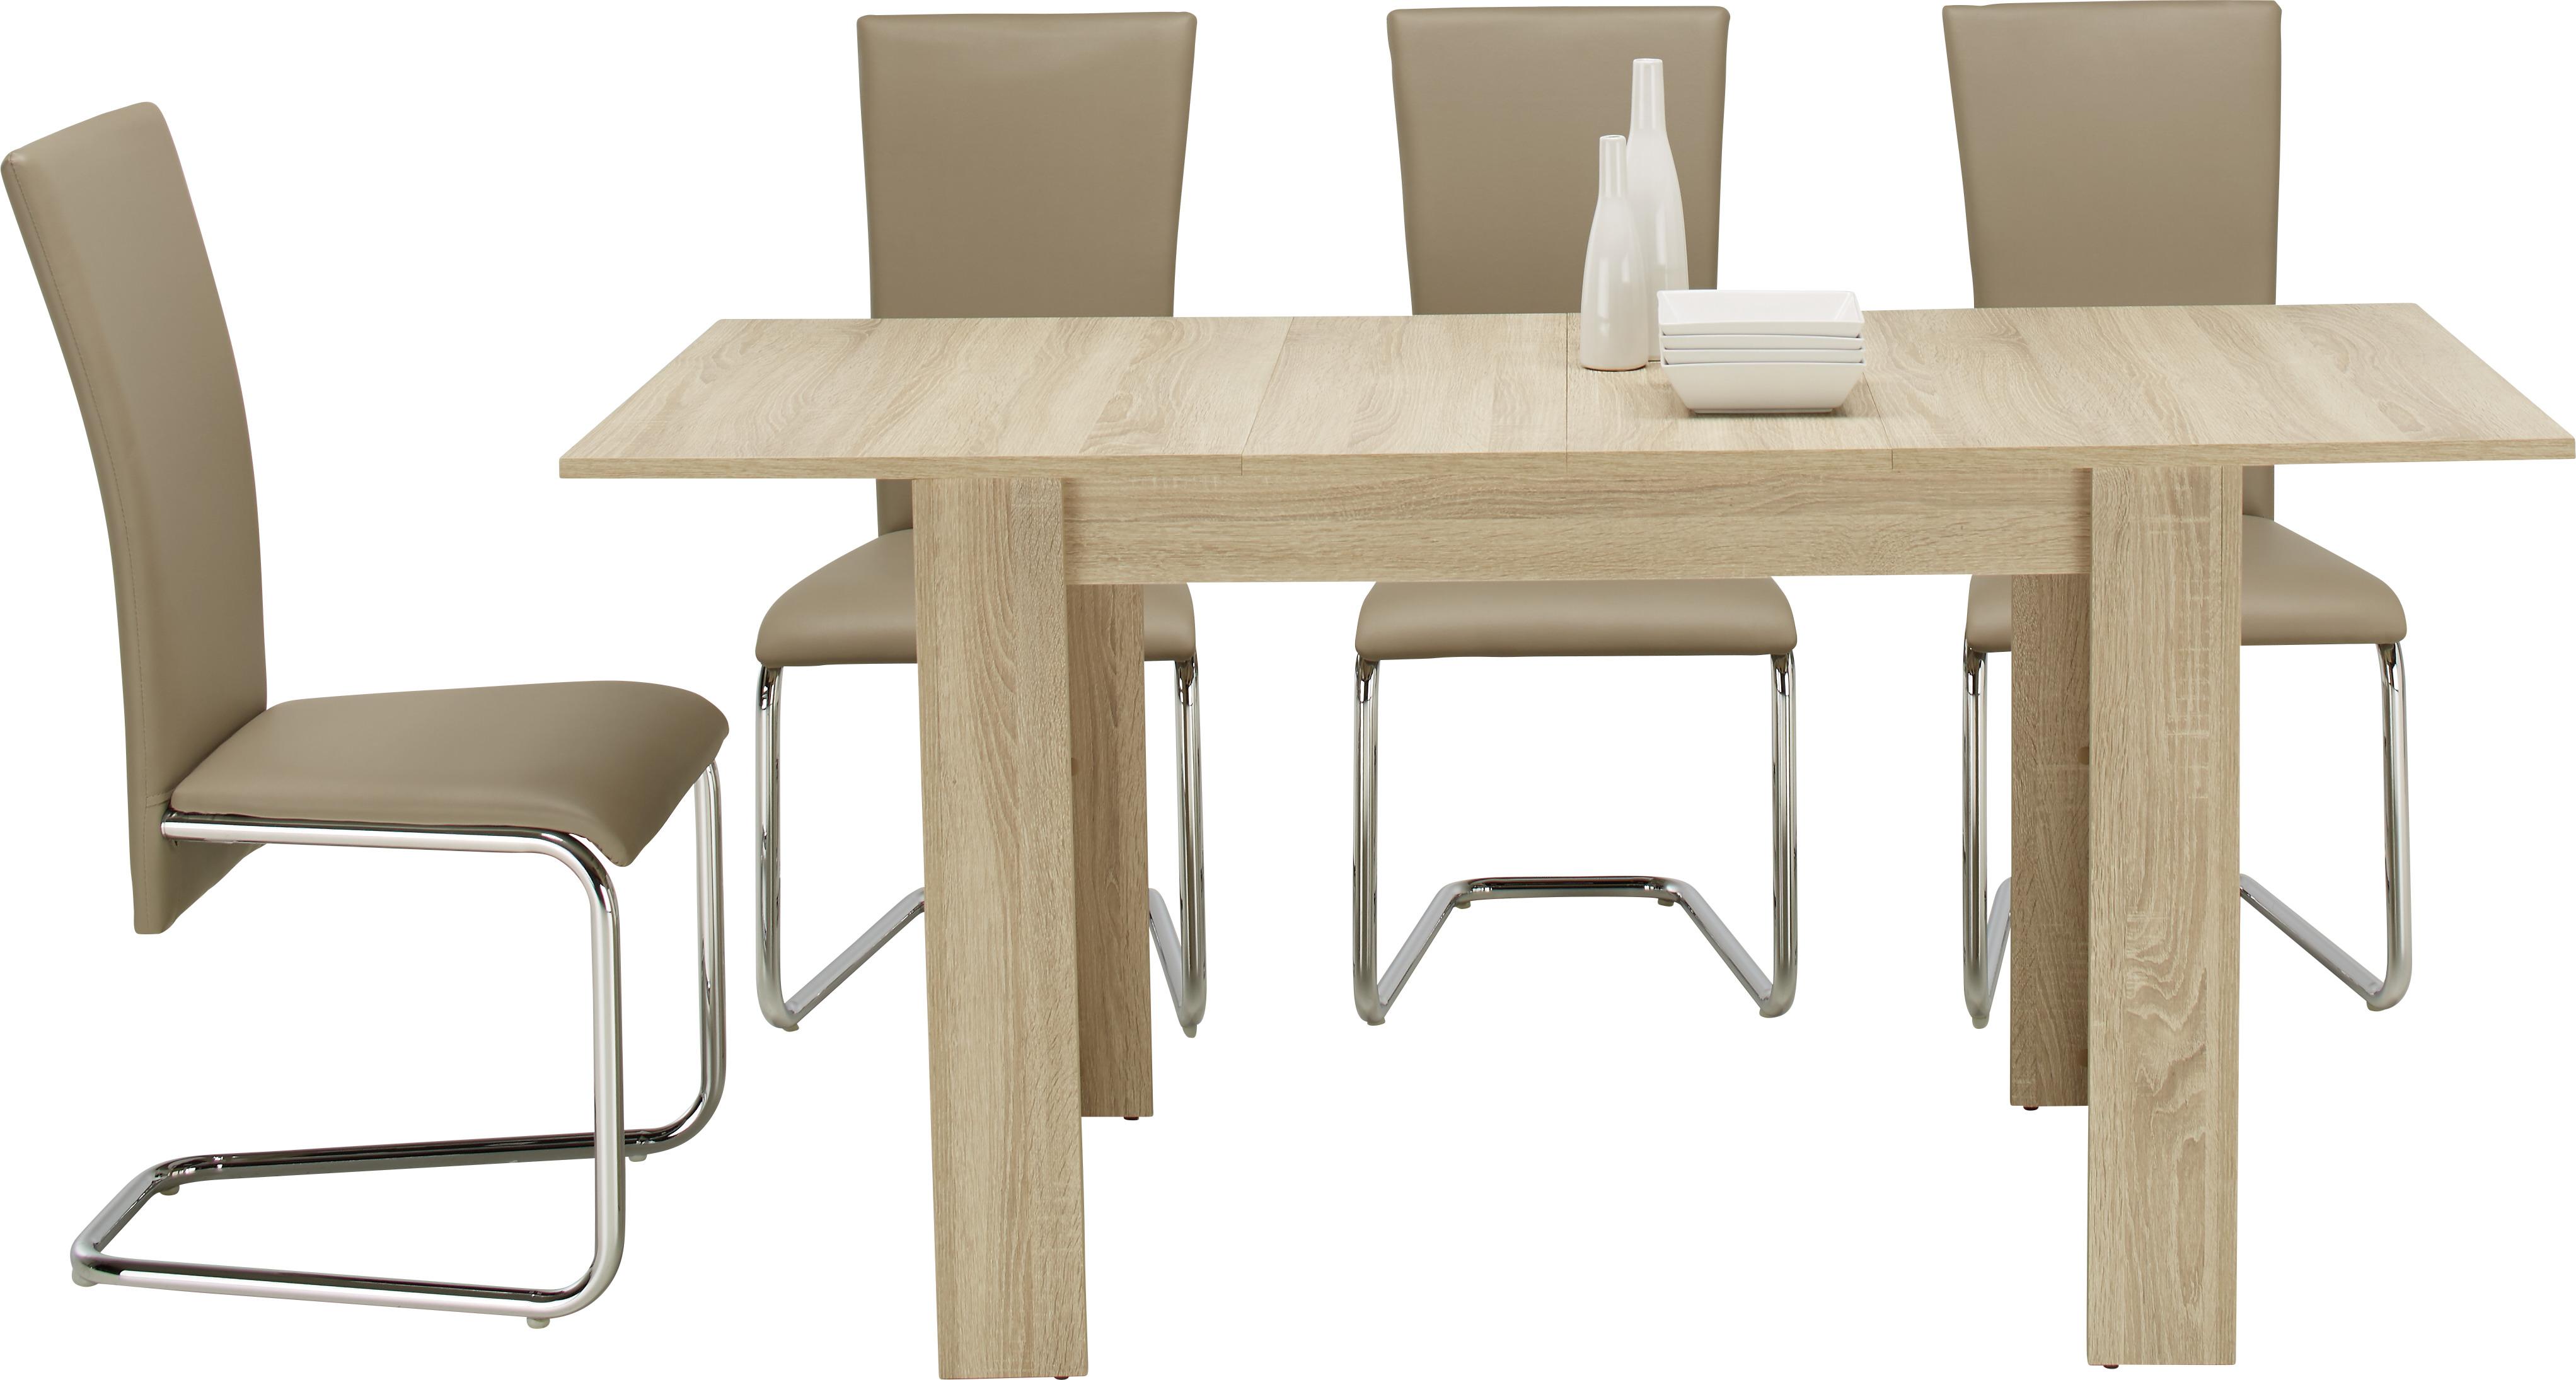 Rozkládací Jídelní Stůl Bianca, 110-164x70 Cm, Dub - barvy dubu, kompozitní dřevo (110-164/70/76cm) - Based